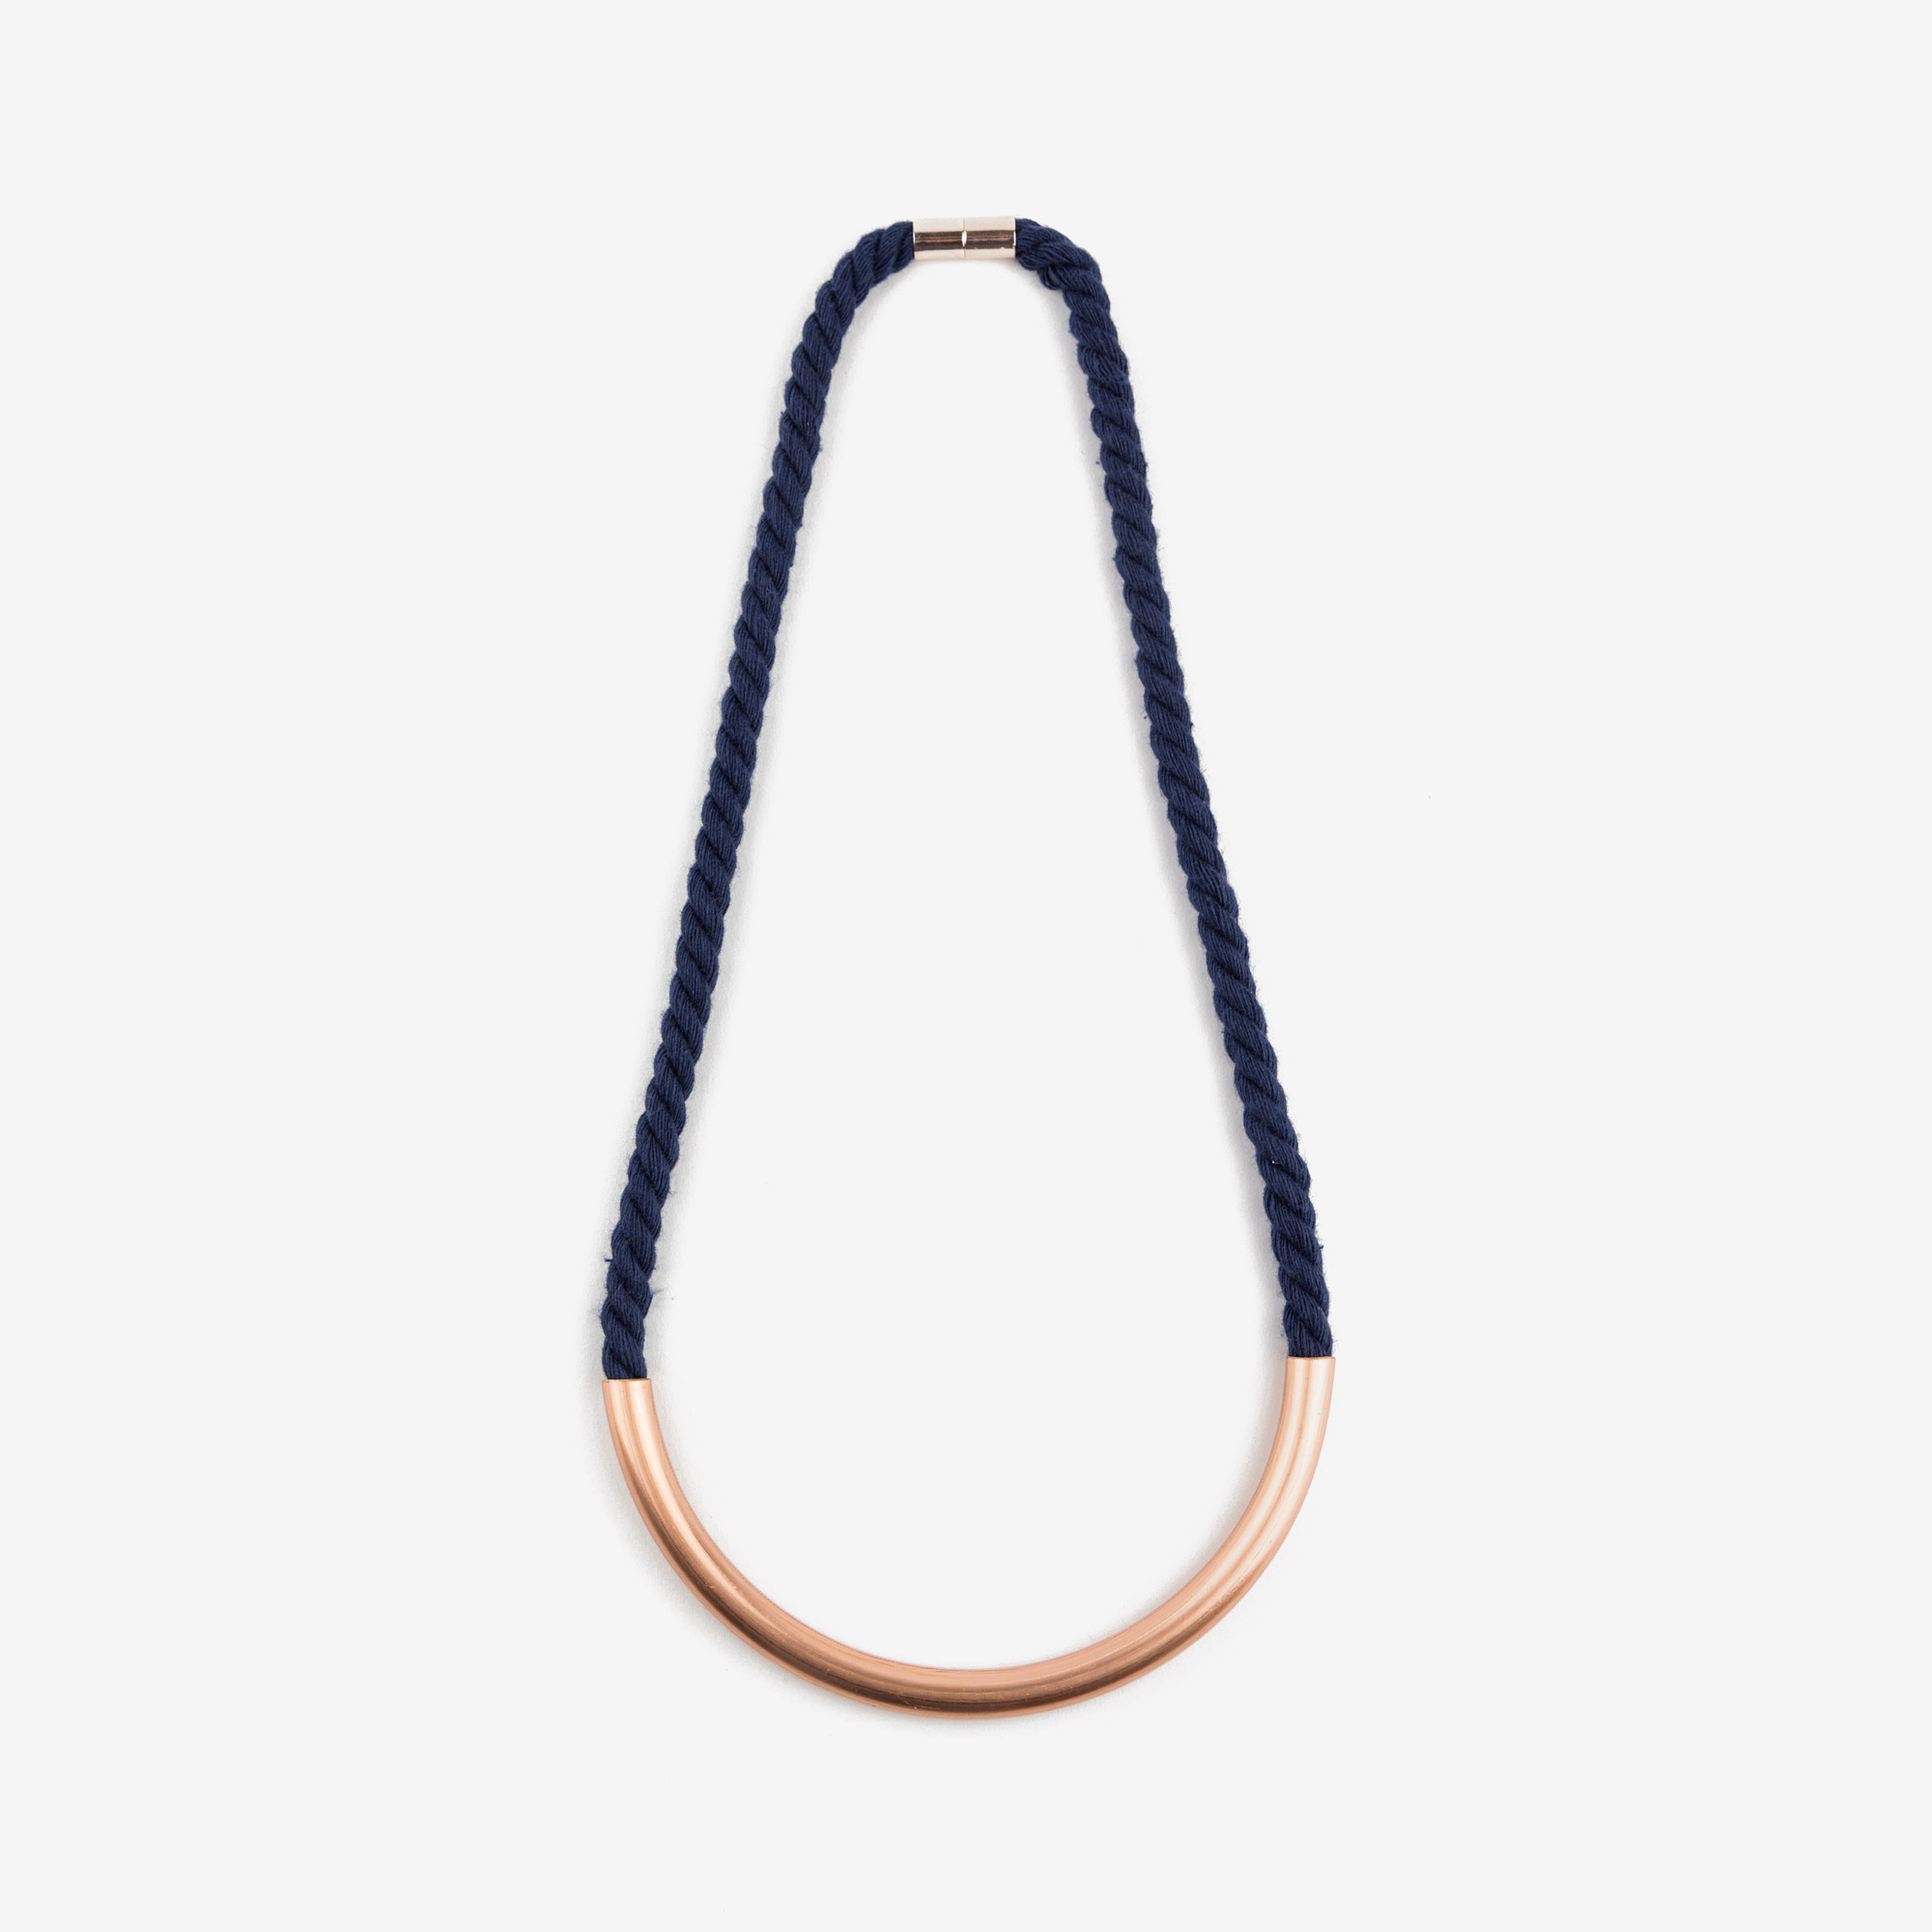 Dahlia blue necklace - NURA.design